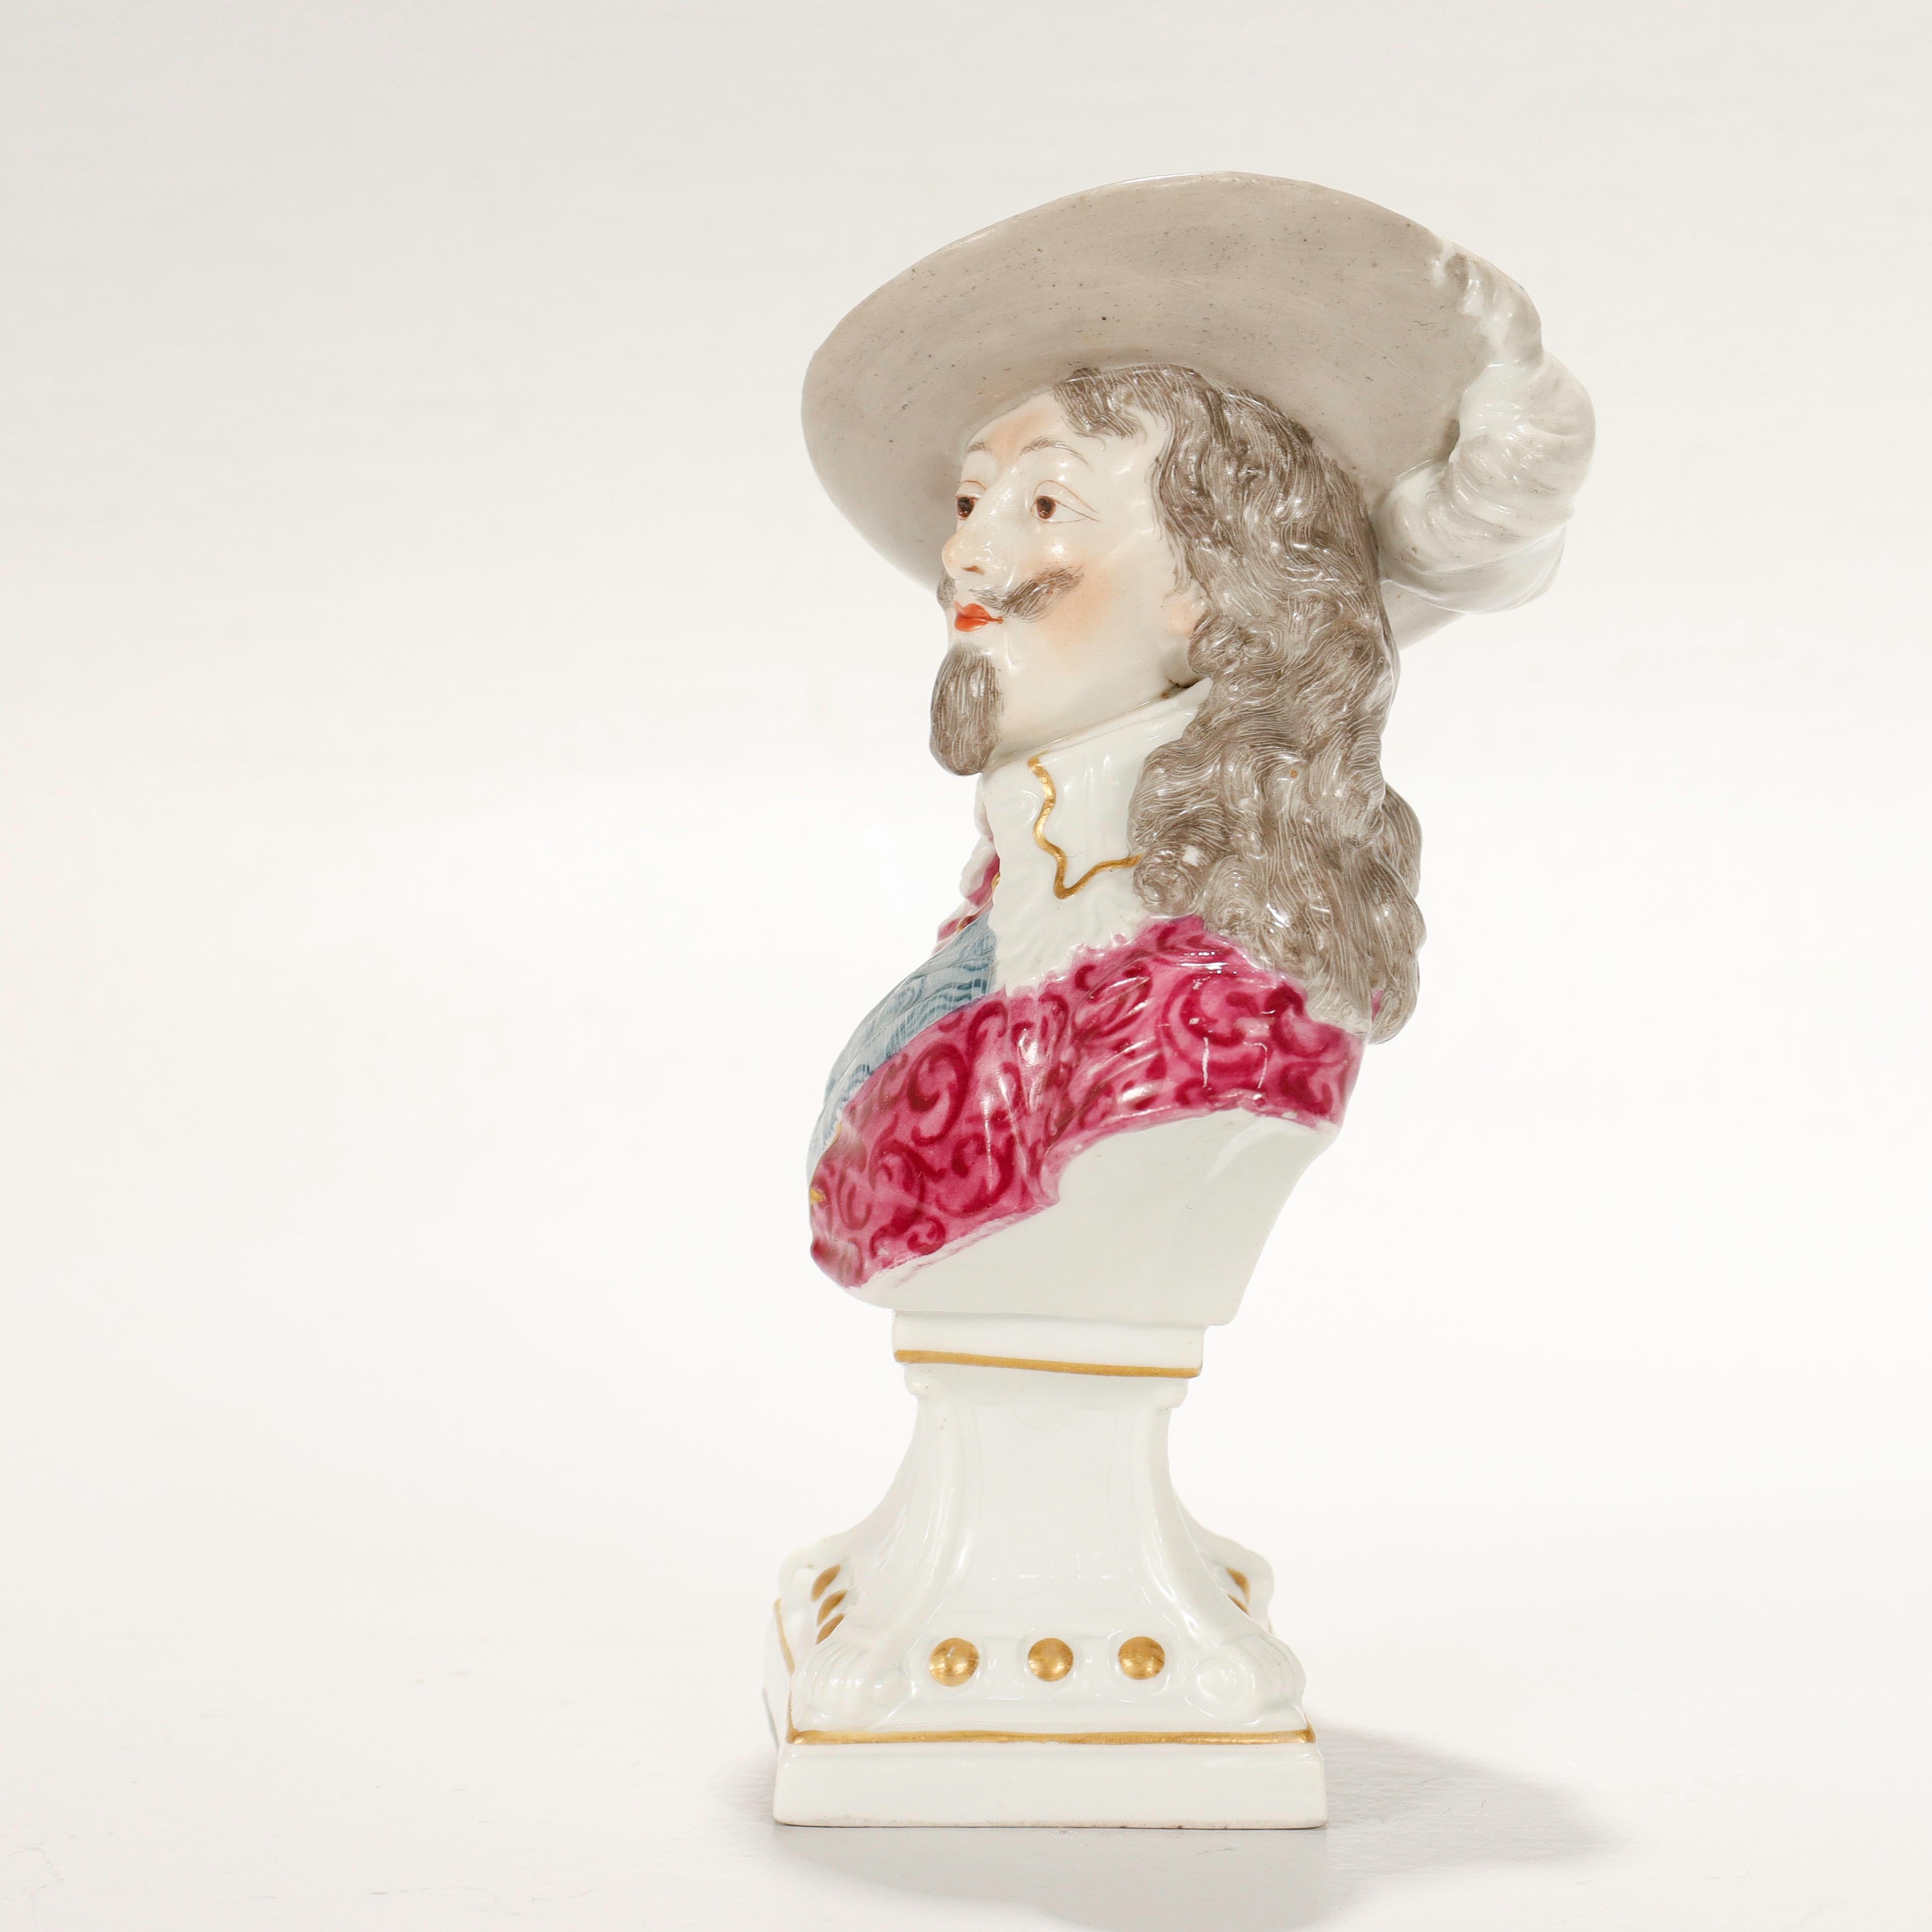 Antique Samson Porcelain Figurine of a Nobleman or Prince For Sale 3